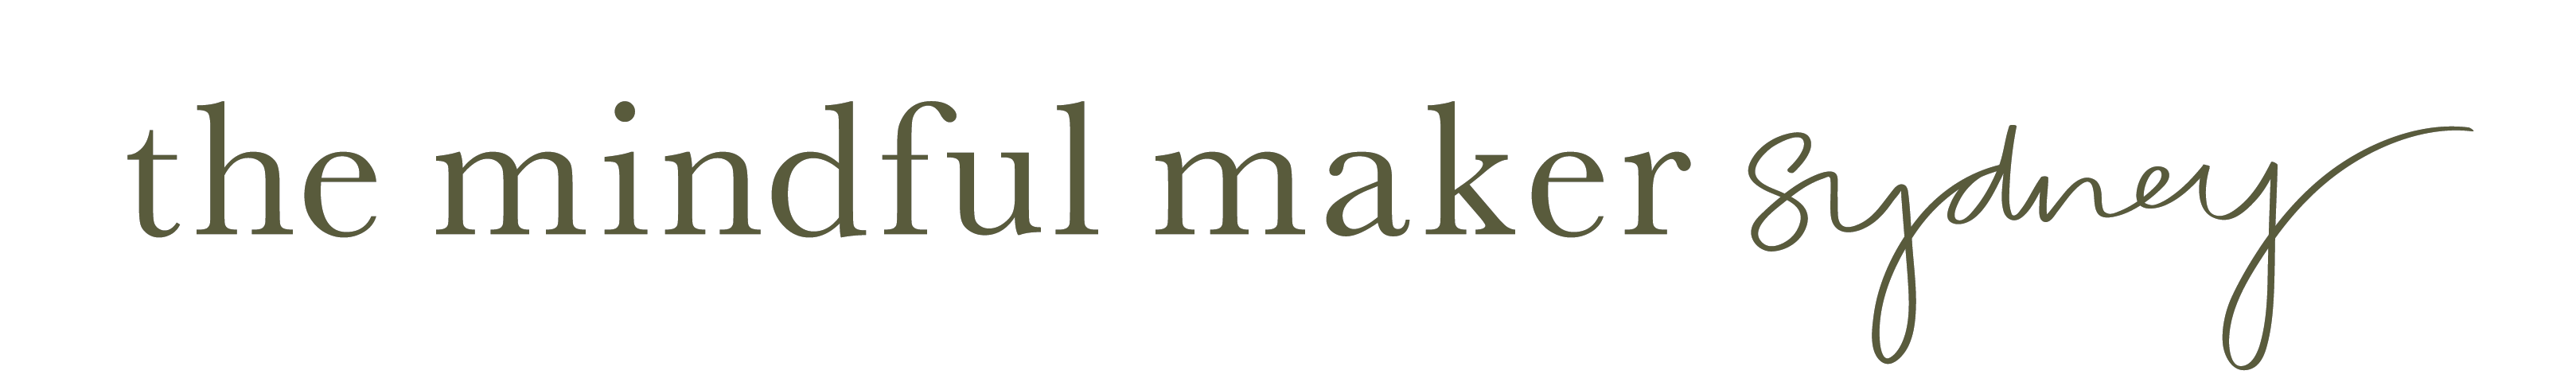 the mindful maker logo